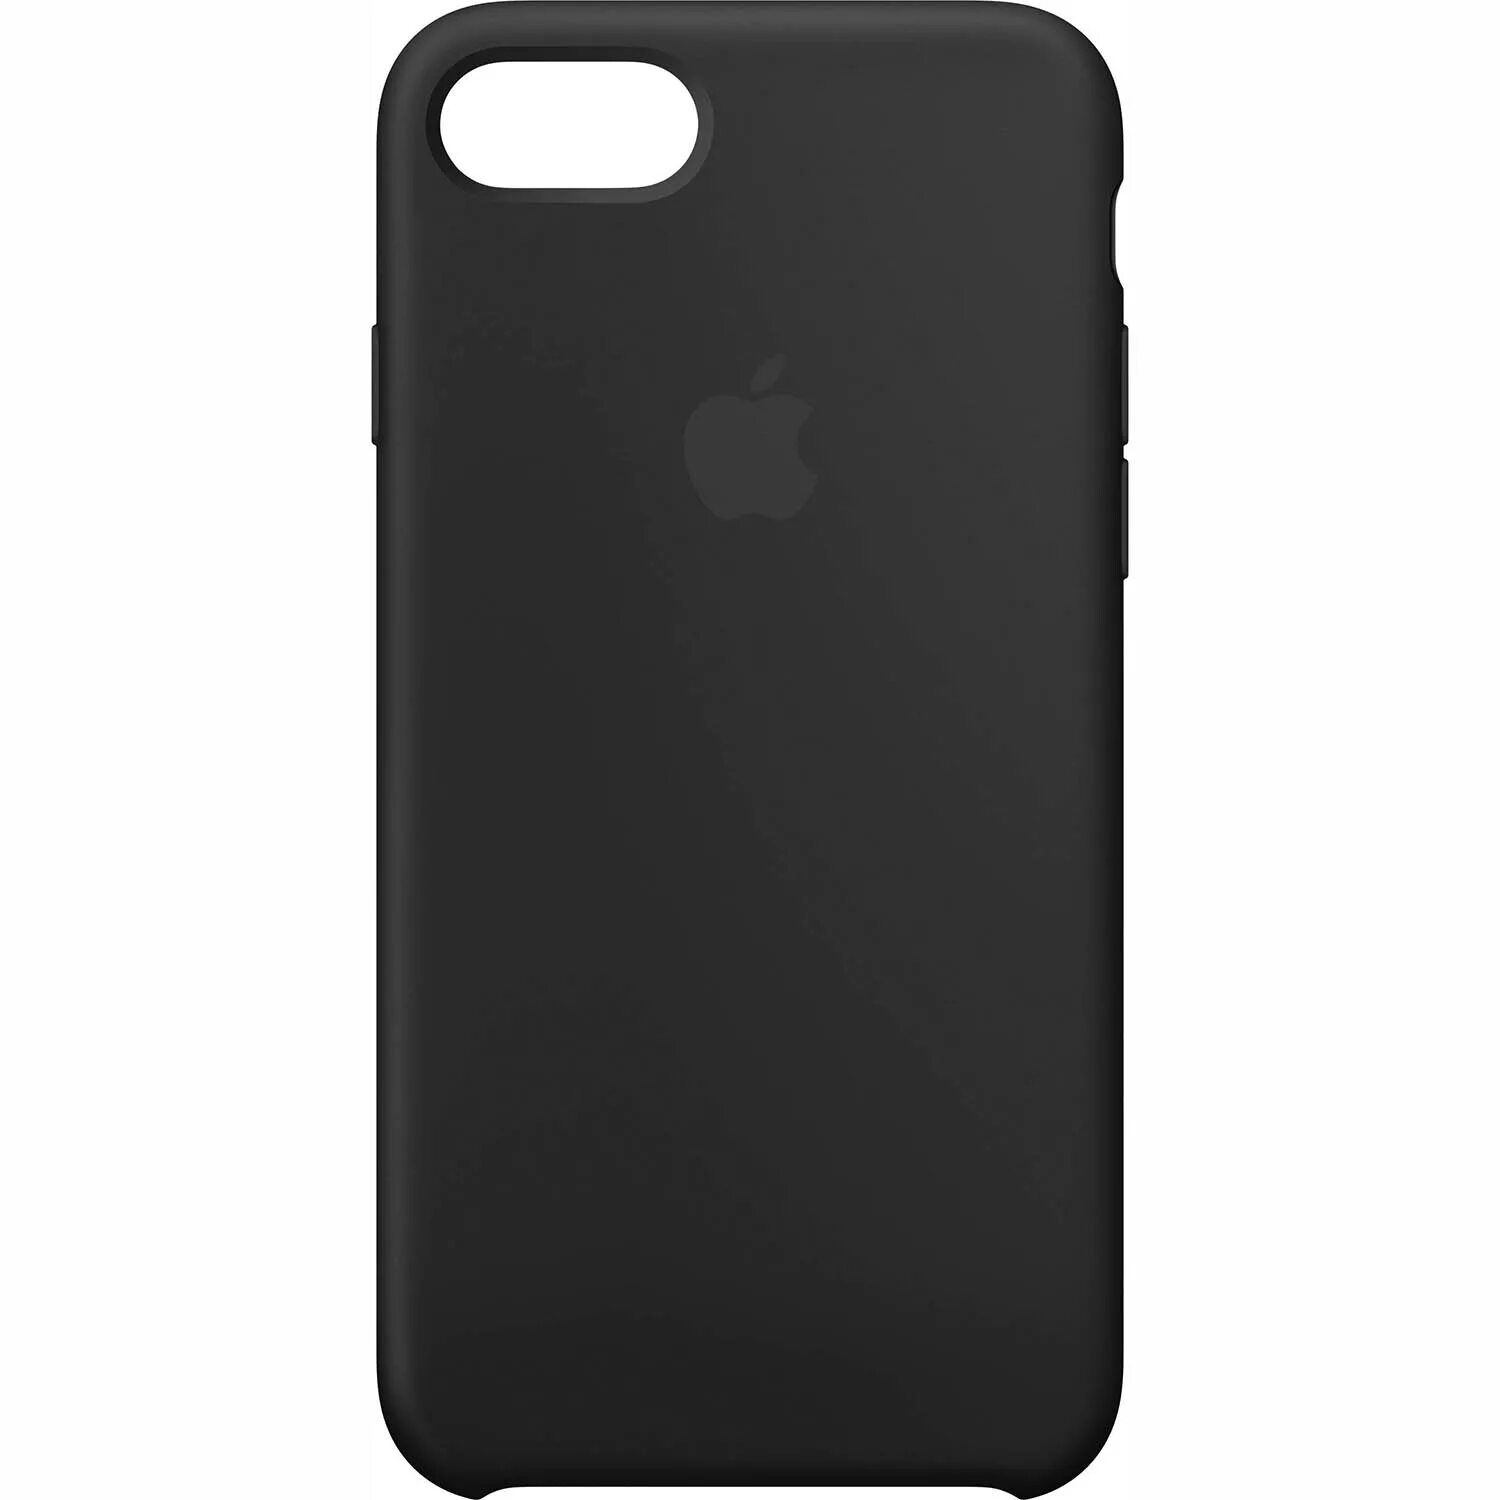 Silicone Case iphone 7 Plus. Iphone 7 Plus Cases. Apple Leather Case iphone 7. Чехол для iphone 8 Plus/7 Plus "Silicone Case". Чехлы апл